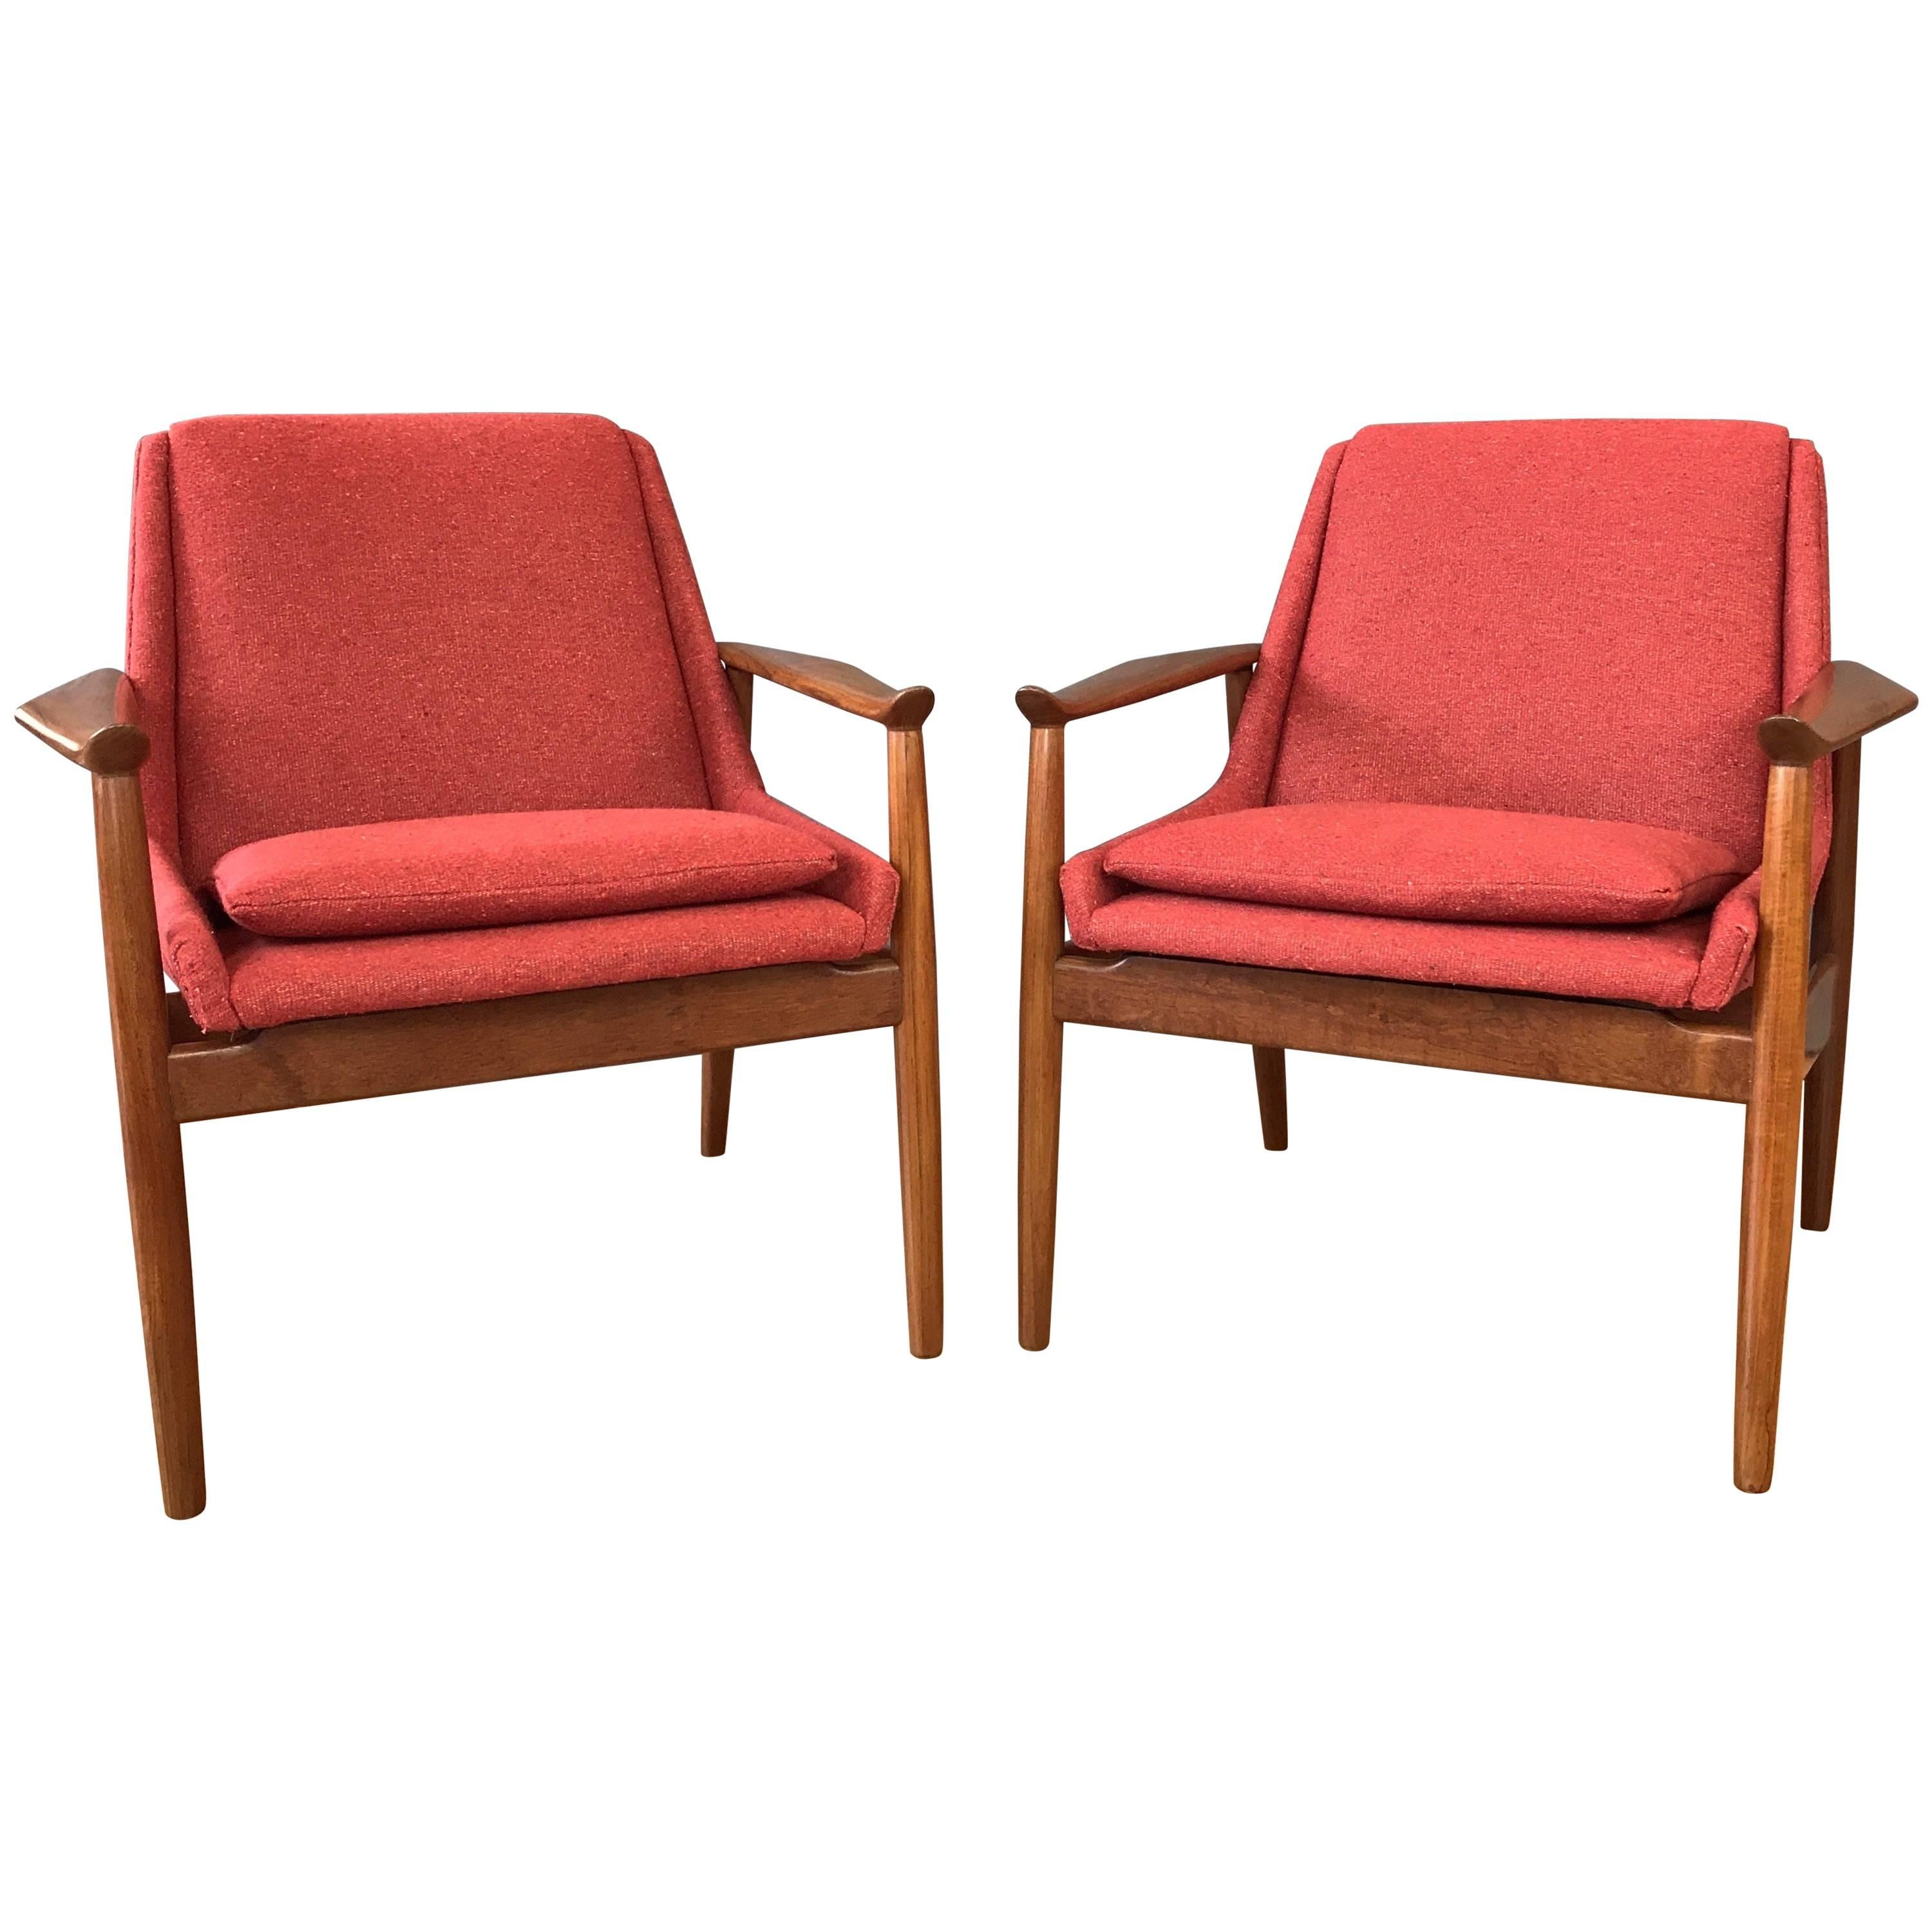 Pair of Arne Vodder for Slagelse No. 810 Teak Lounge Chairs